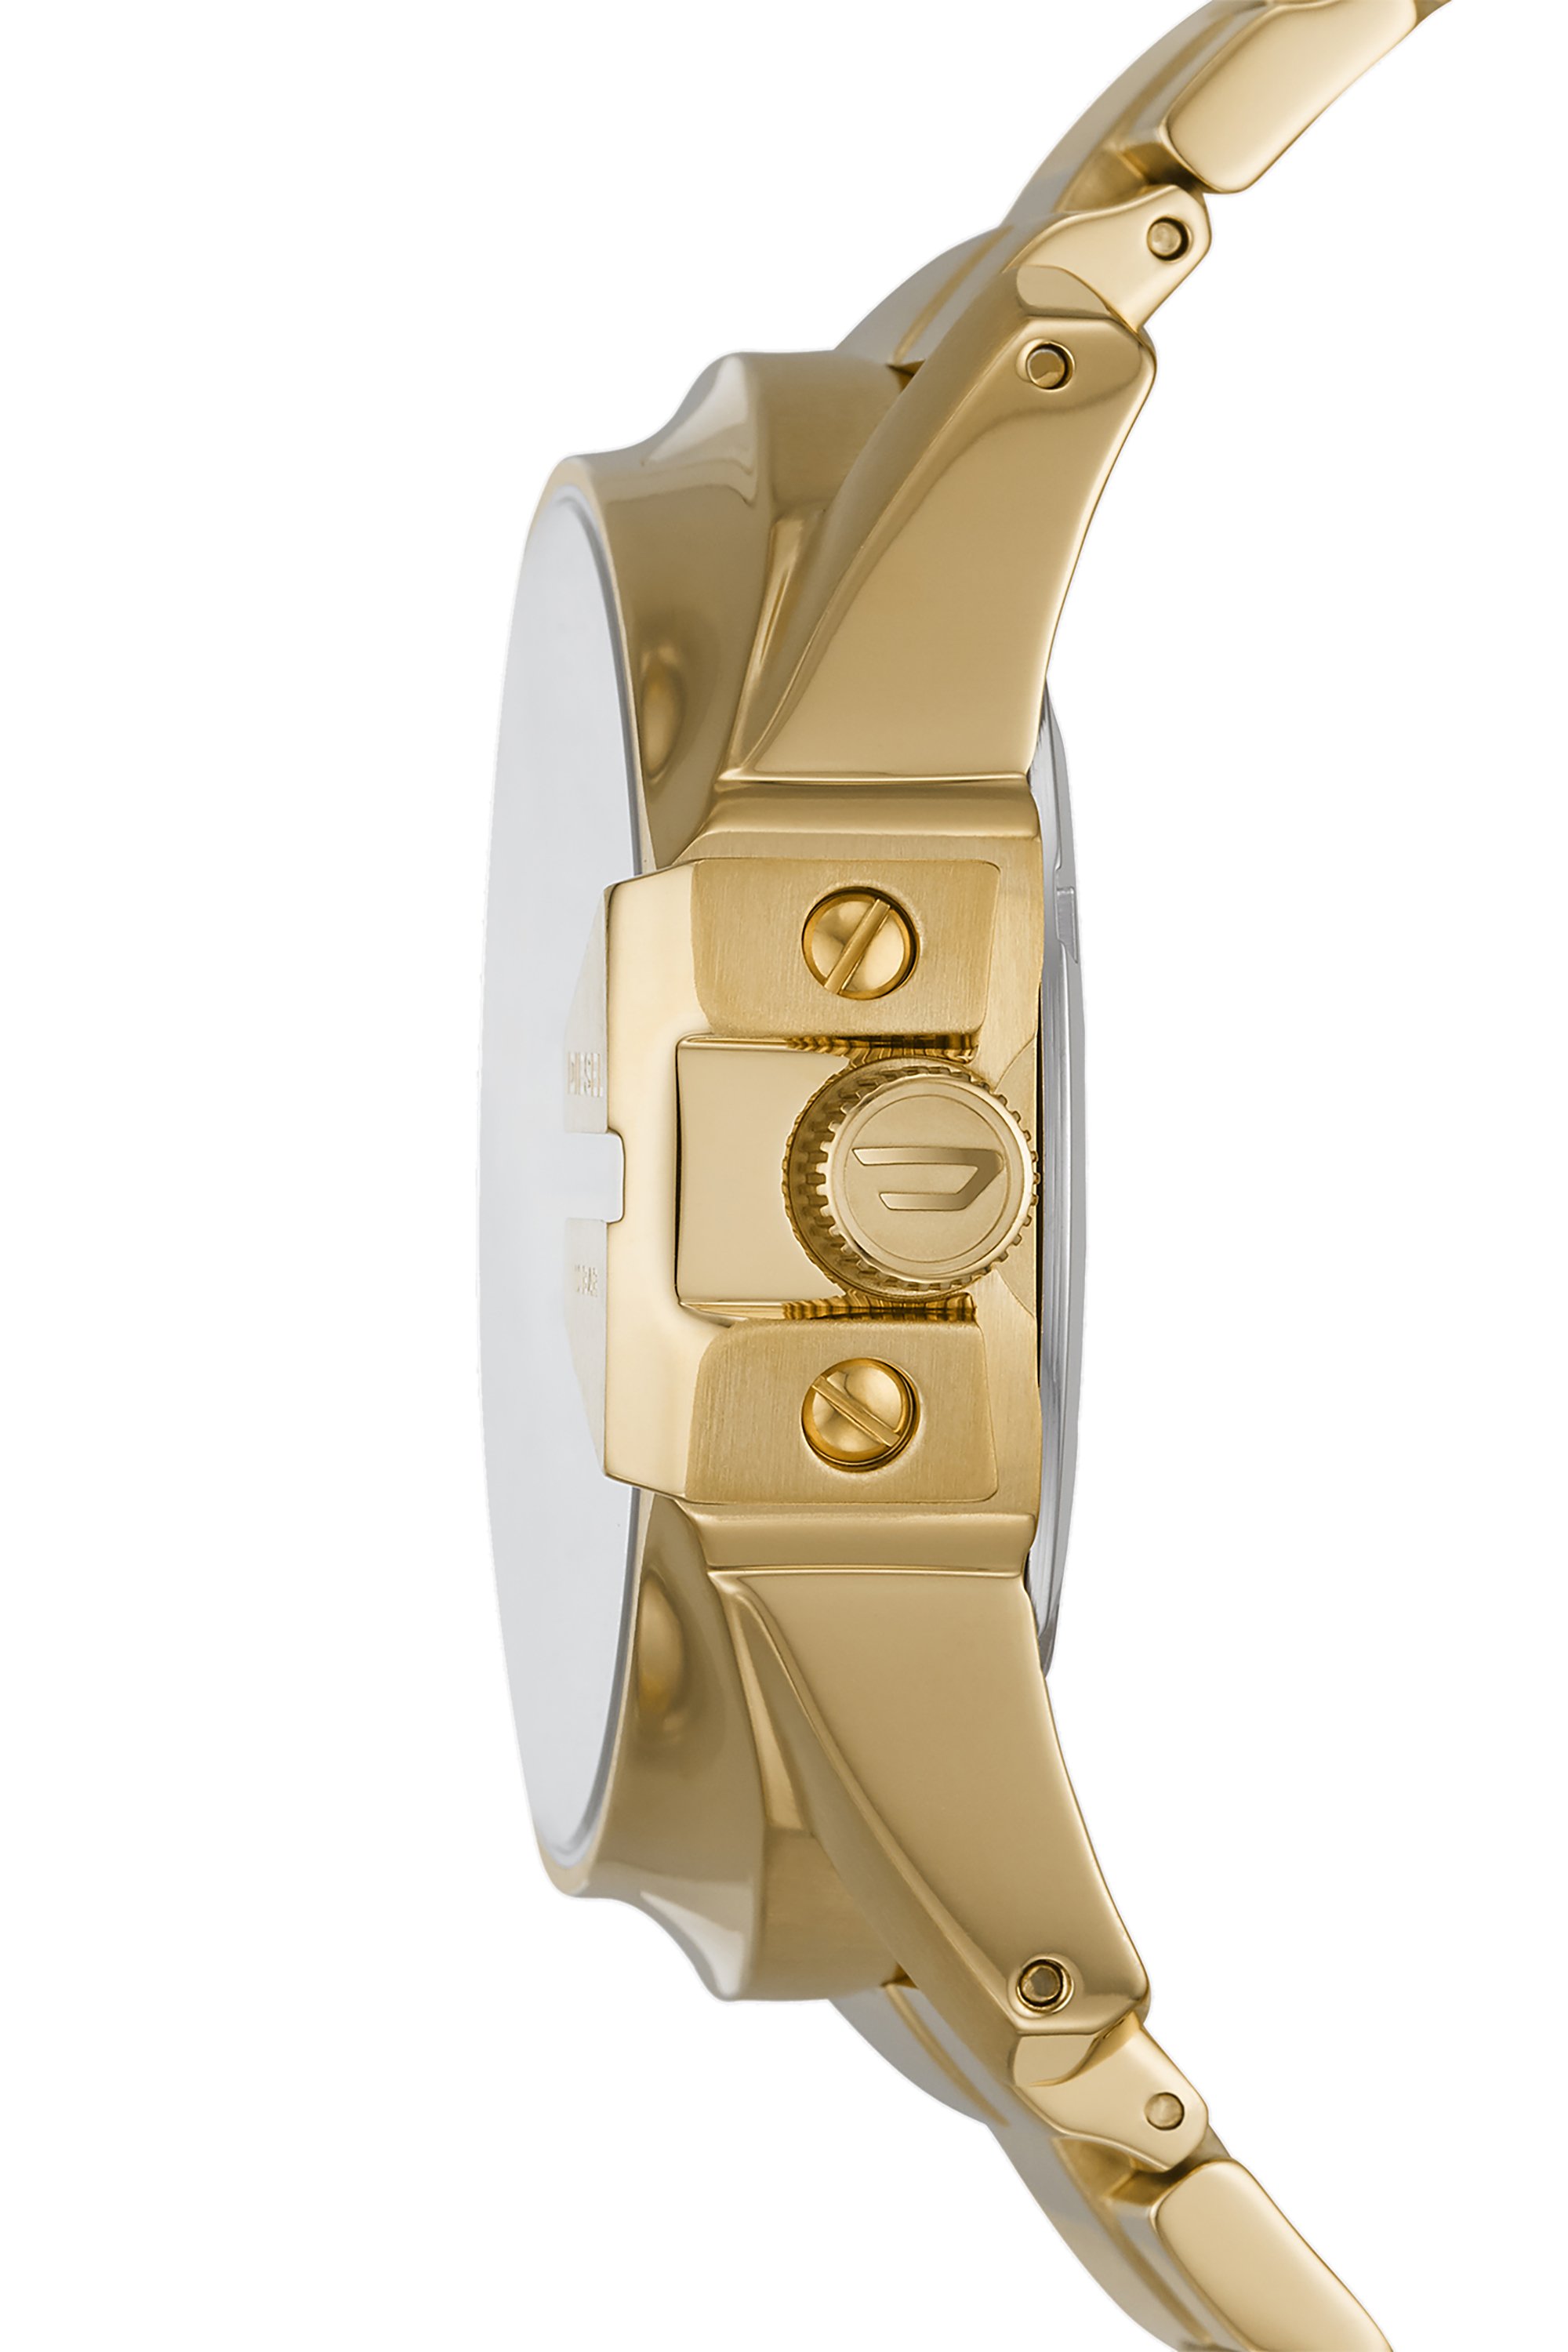 Zusammenfassung unserer besten Gold armbanduhr damen